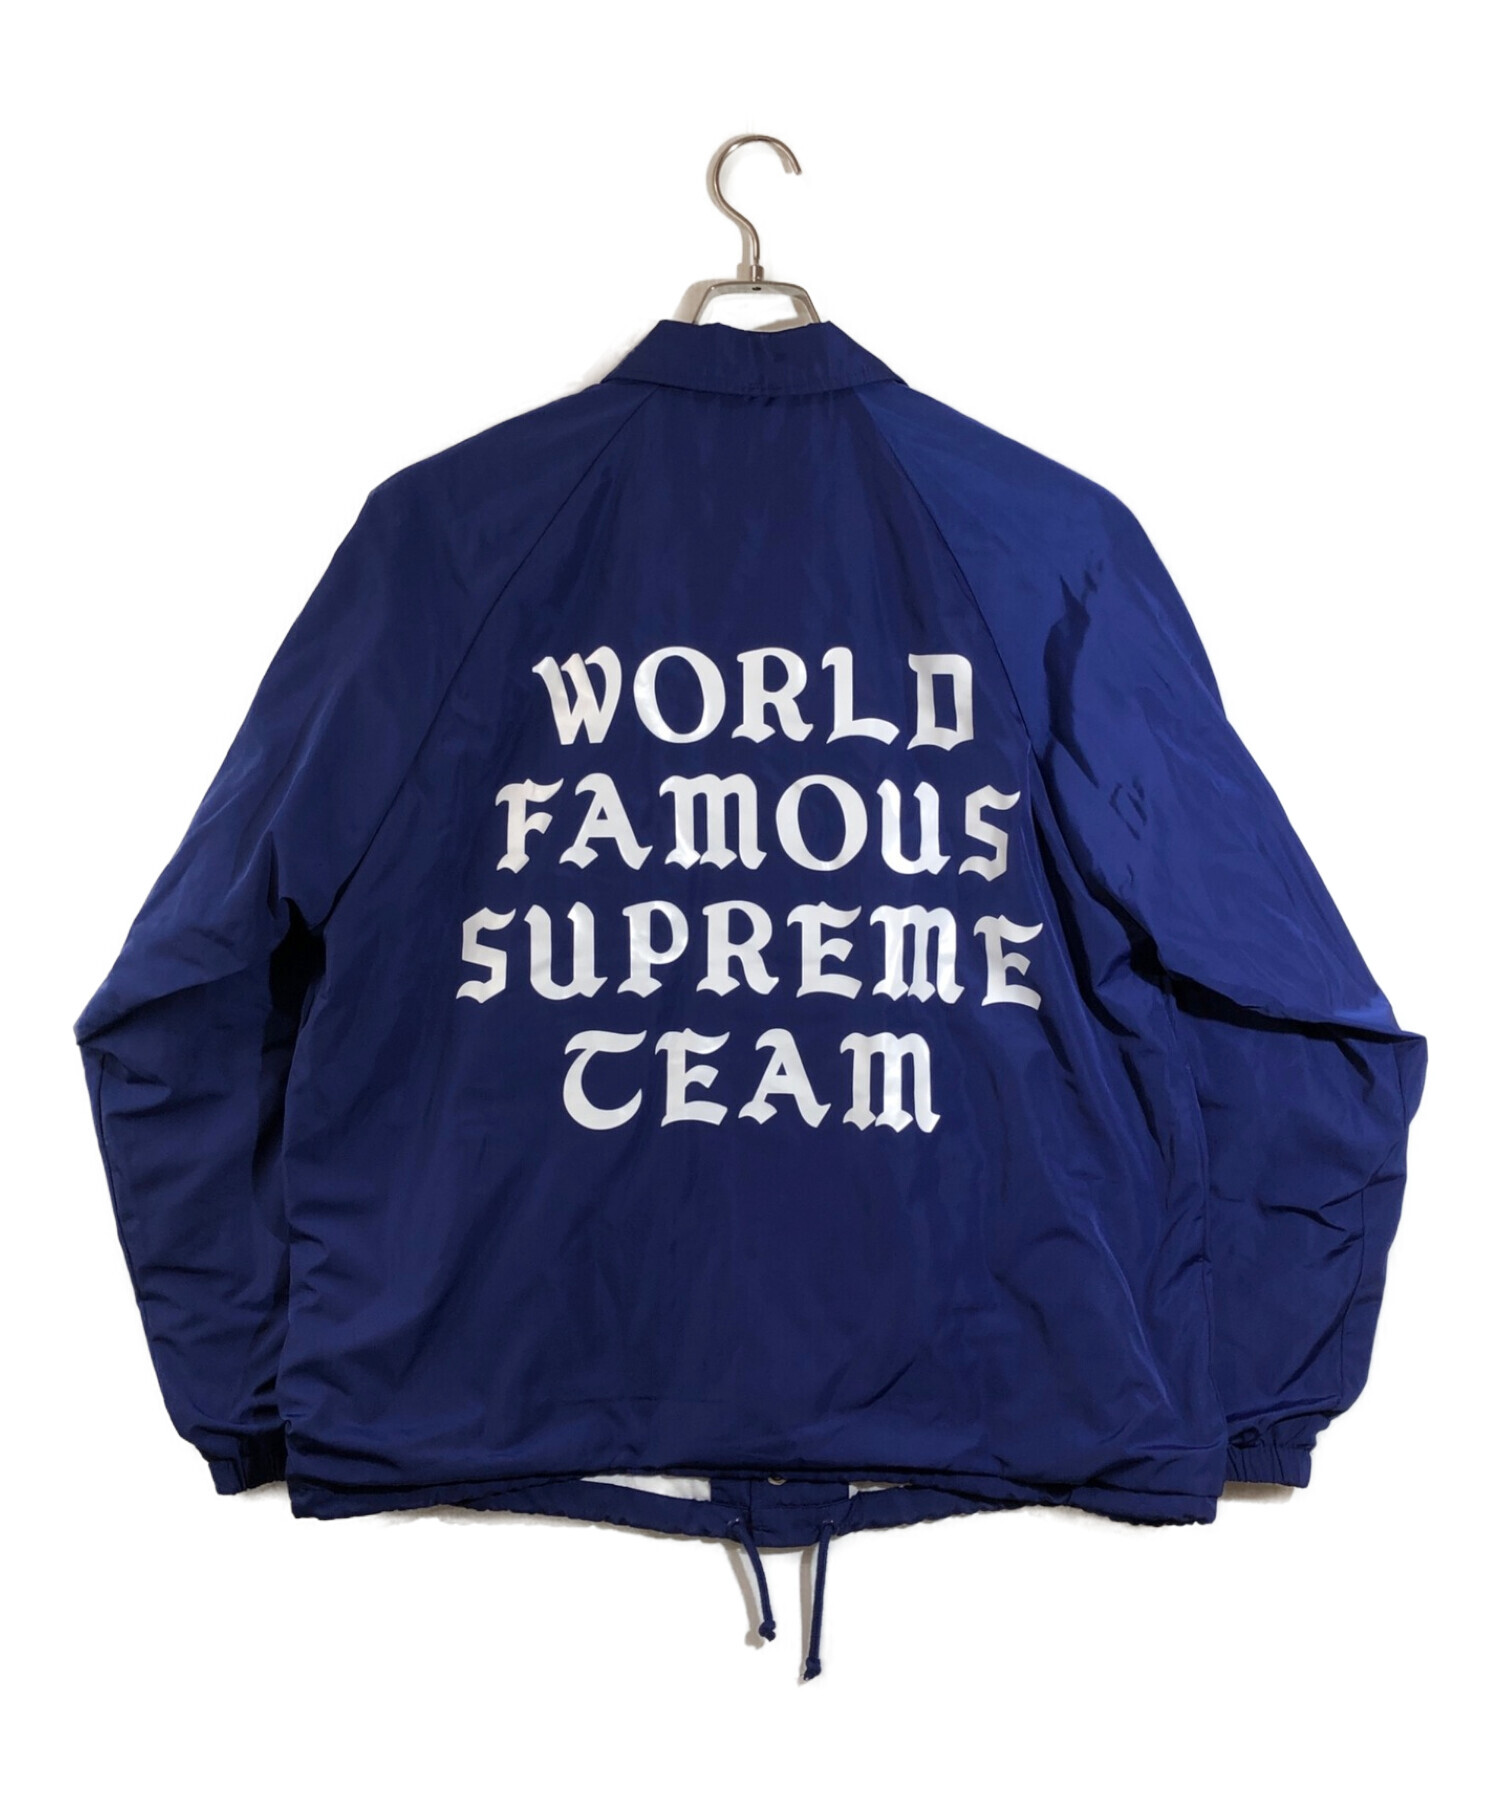 Supreme (シュプリーム) world famous supreme ceam　ワールドフェイマス バックロゴ コーチジャケット. ブルー  サイズ:M